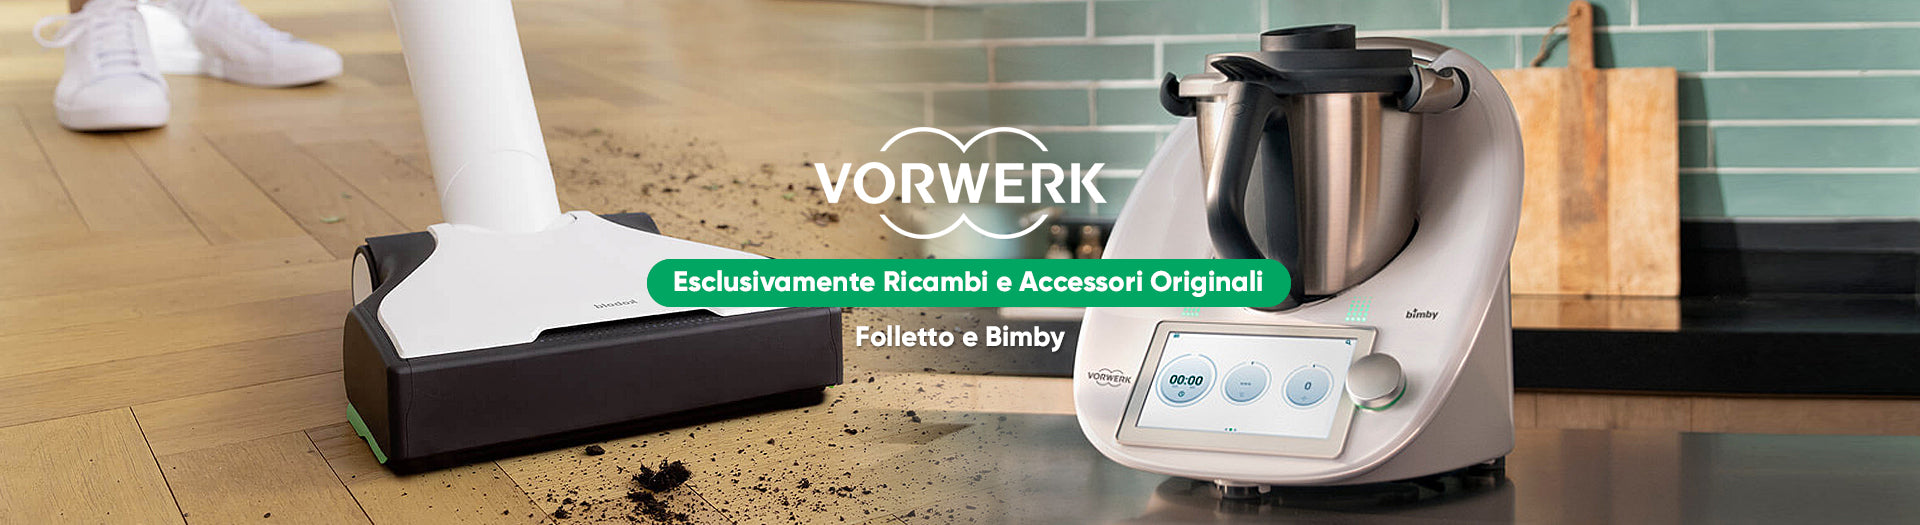 Folletto Vorwerk VK7 s che aspira un pavimento pieno di terreno e un Bimby TM6 su un piano di lavoro in cucina